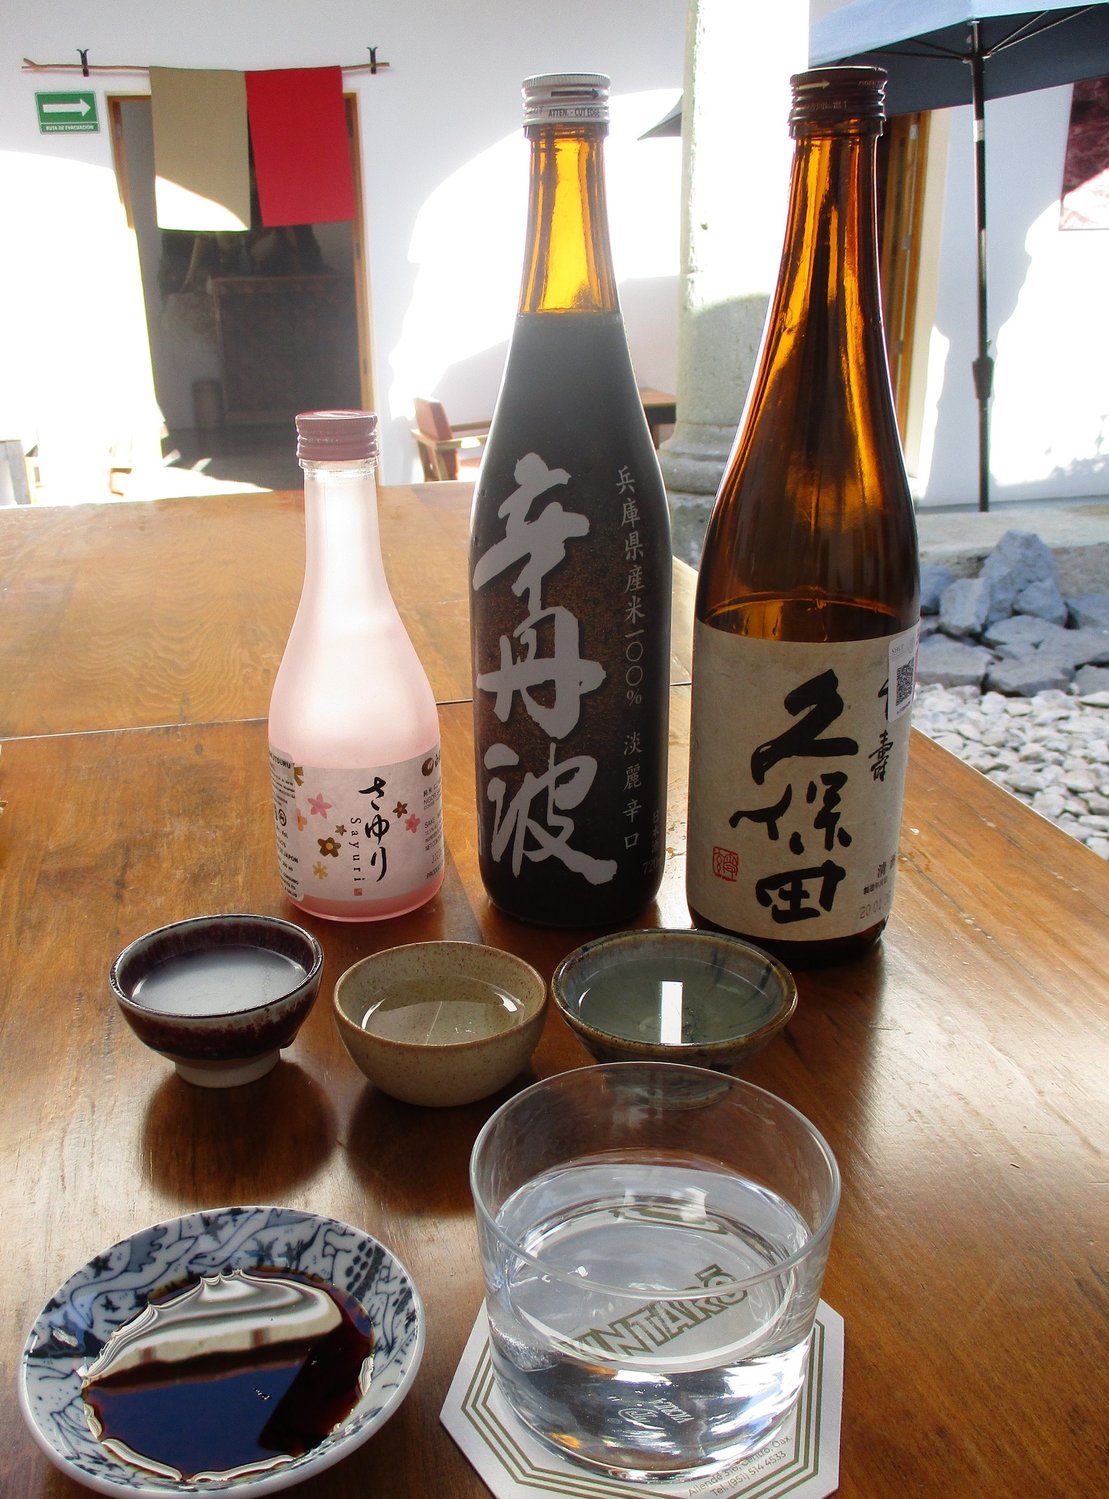 Kintaro sake sampler.